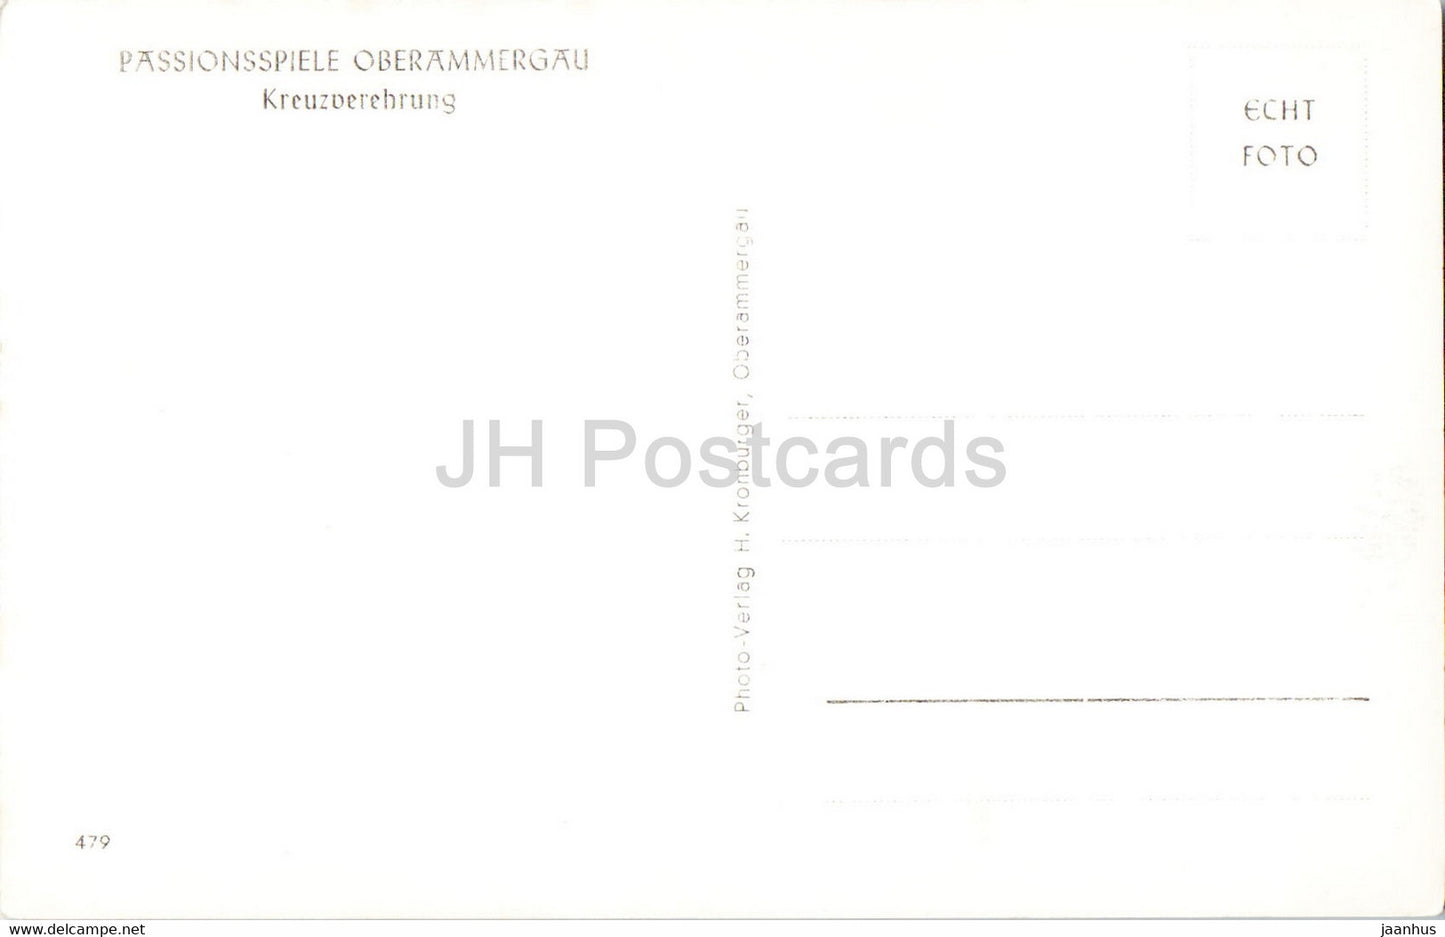 Passionsspiele Oberammergau - Kreuzverehrung - Theater - alte Postkarte - Deutschland - unbenutzt